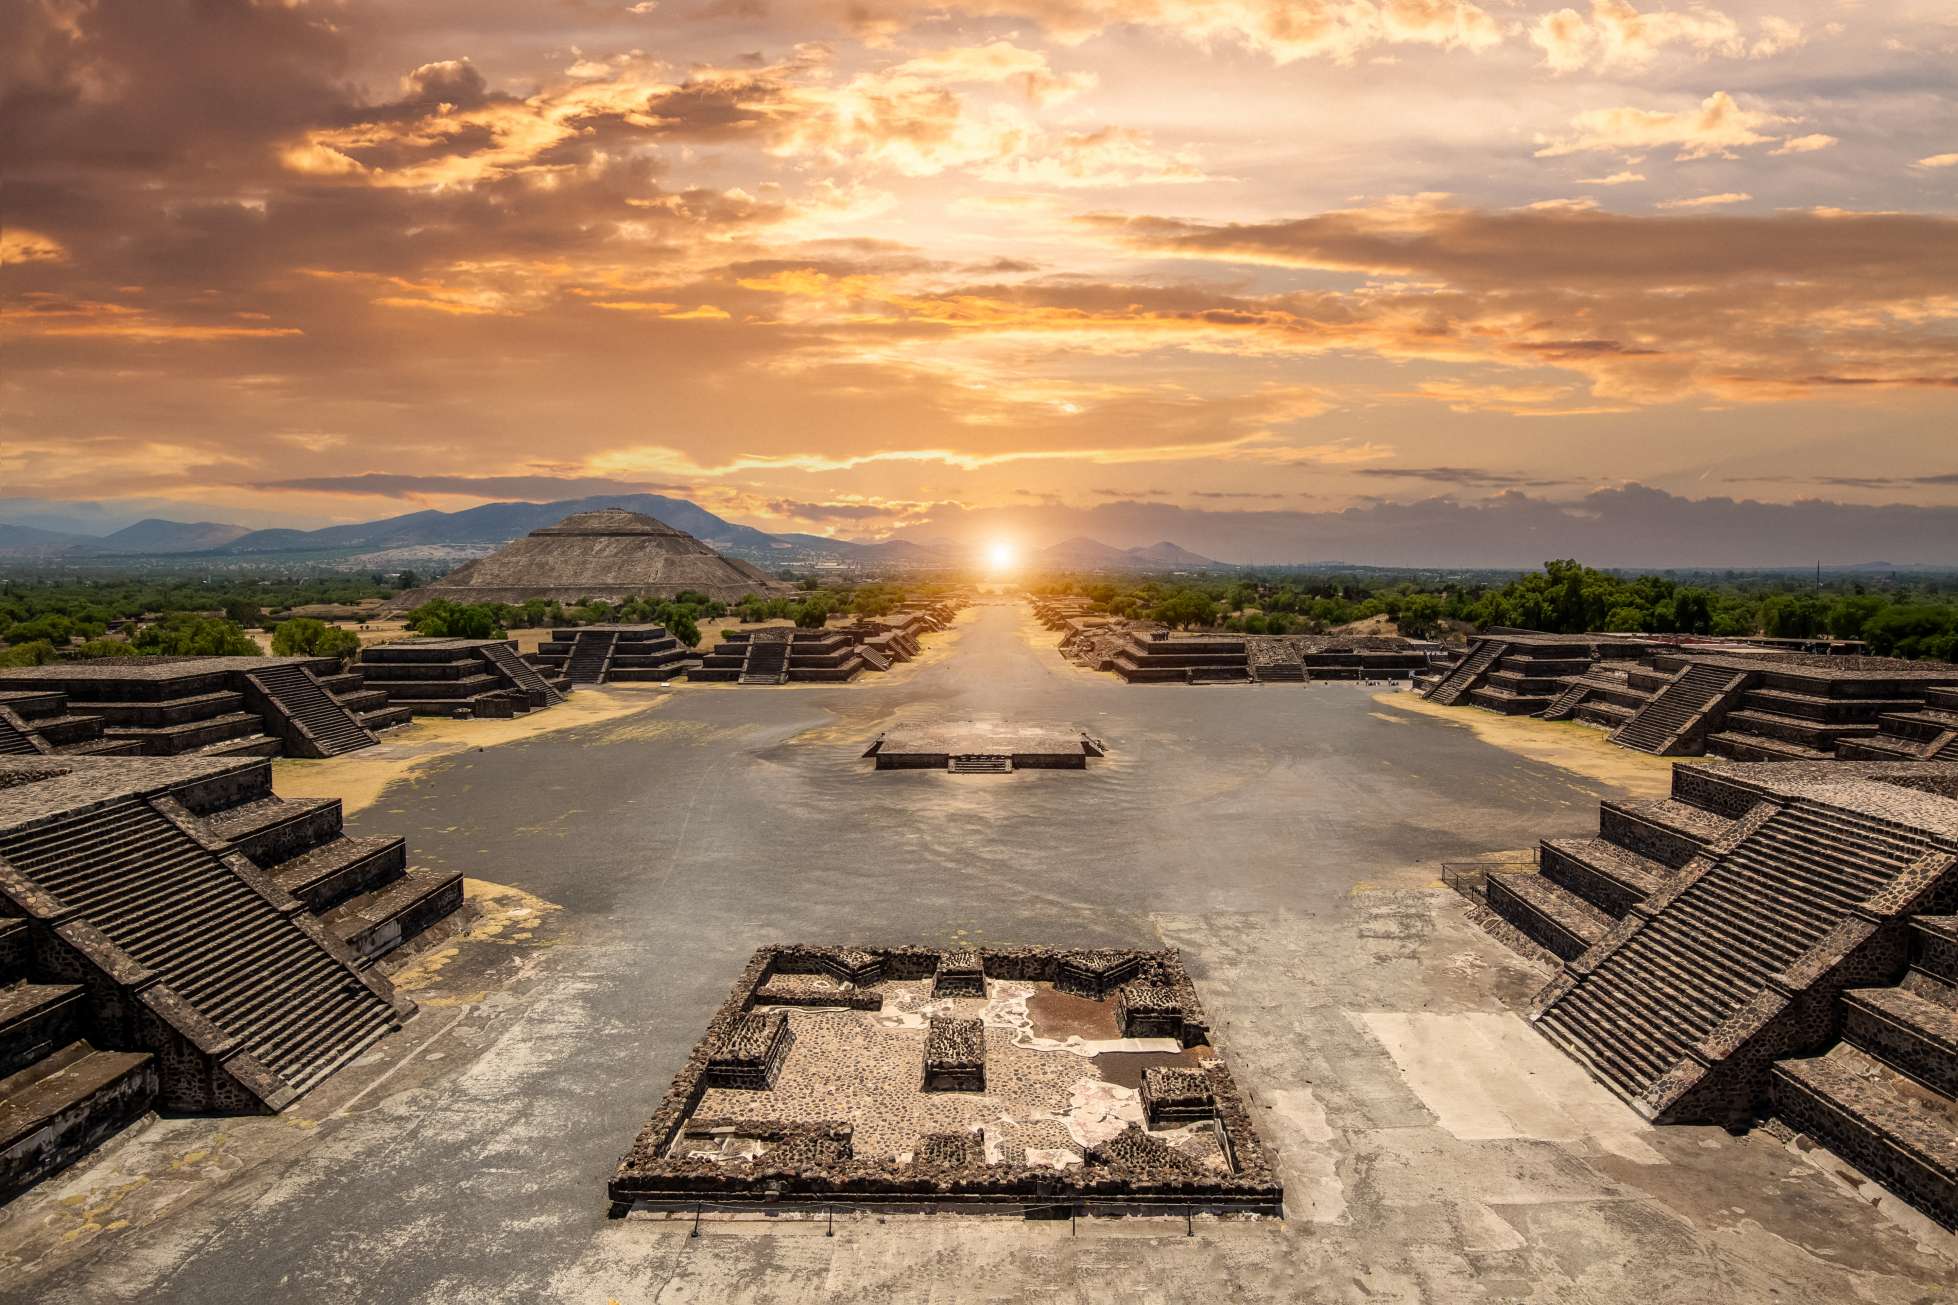 Hluboko v srdci Mexika leží fascinující archeologické naleziště, které mátlo odborníky po staletí. Teotihuacán, což znamená „místo, kde byli stvořeni bohové“, je domovem některých z nejpůsobivějších pyramid a ruin v celé Střední Americe. Pyramidový komplex Teotihuacán se nachází v Mexické vysočině a Mexico Valley poblíž Mexico City. © iStock